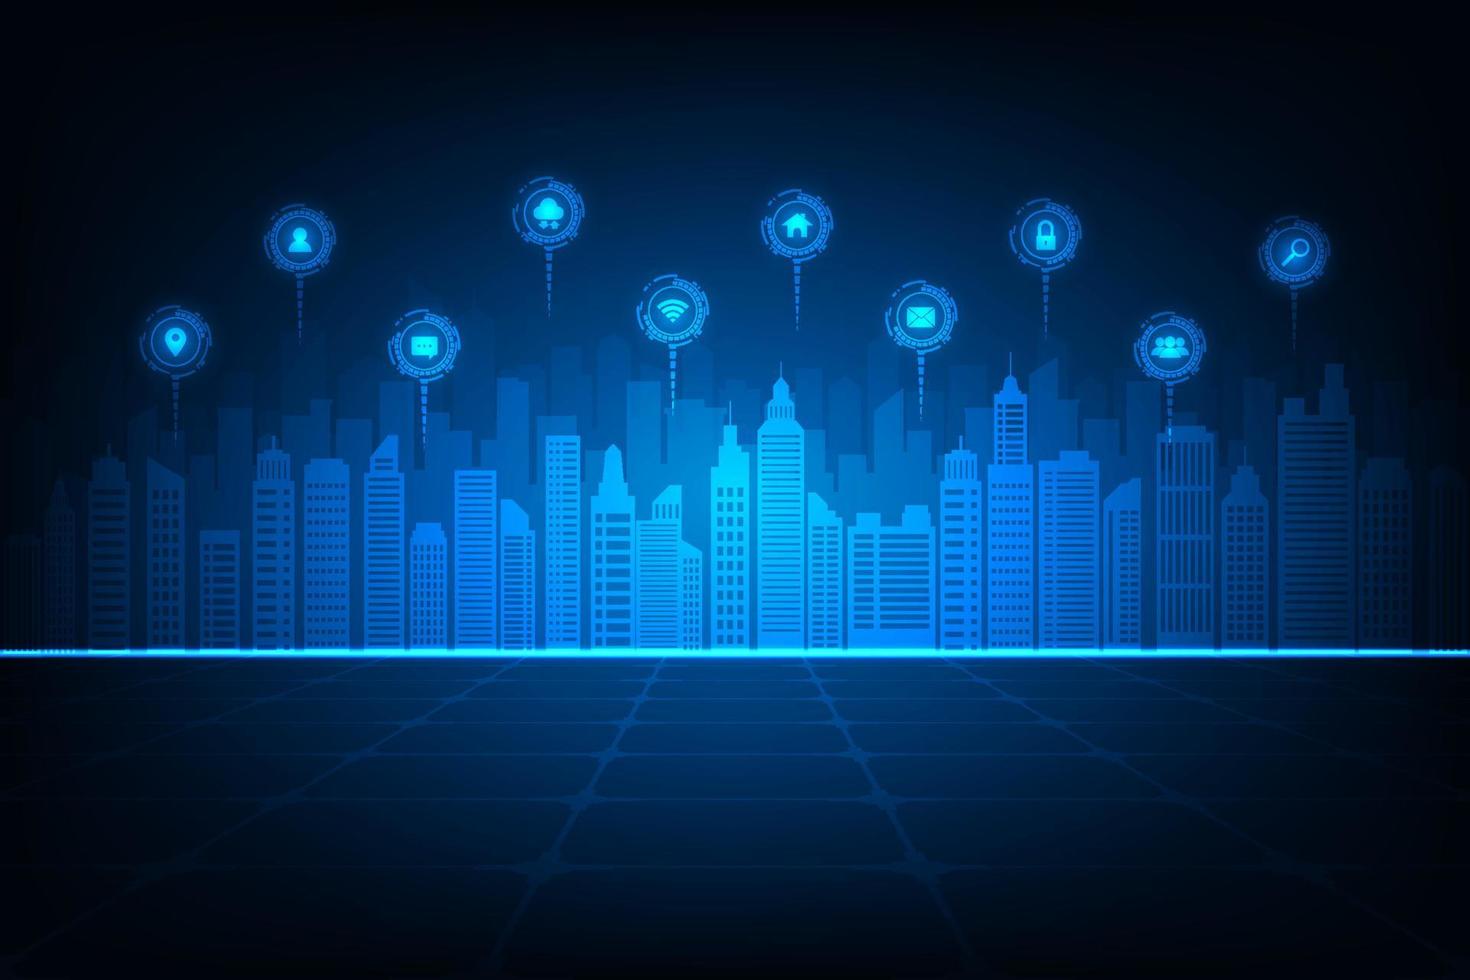 vetor tecnologia internet das coisas conceito de rede online de cidade inteligente. fundo azul abstrato.